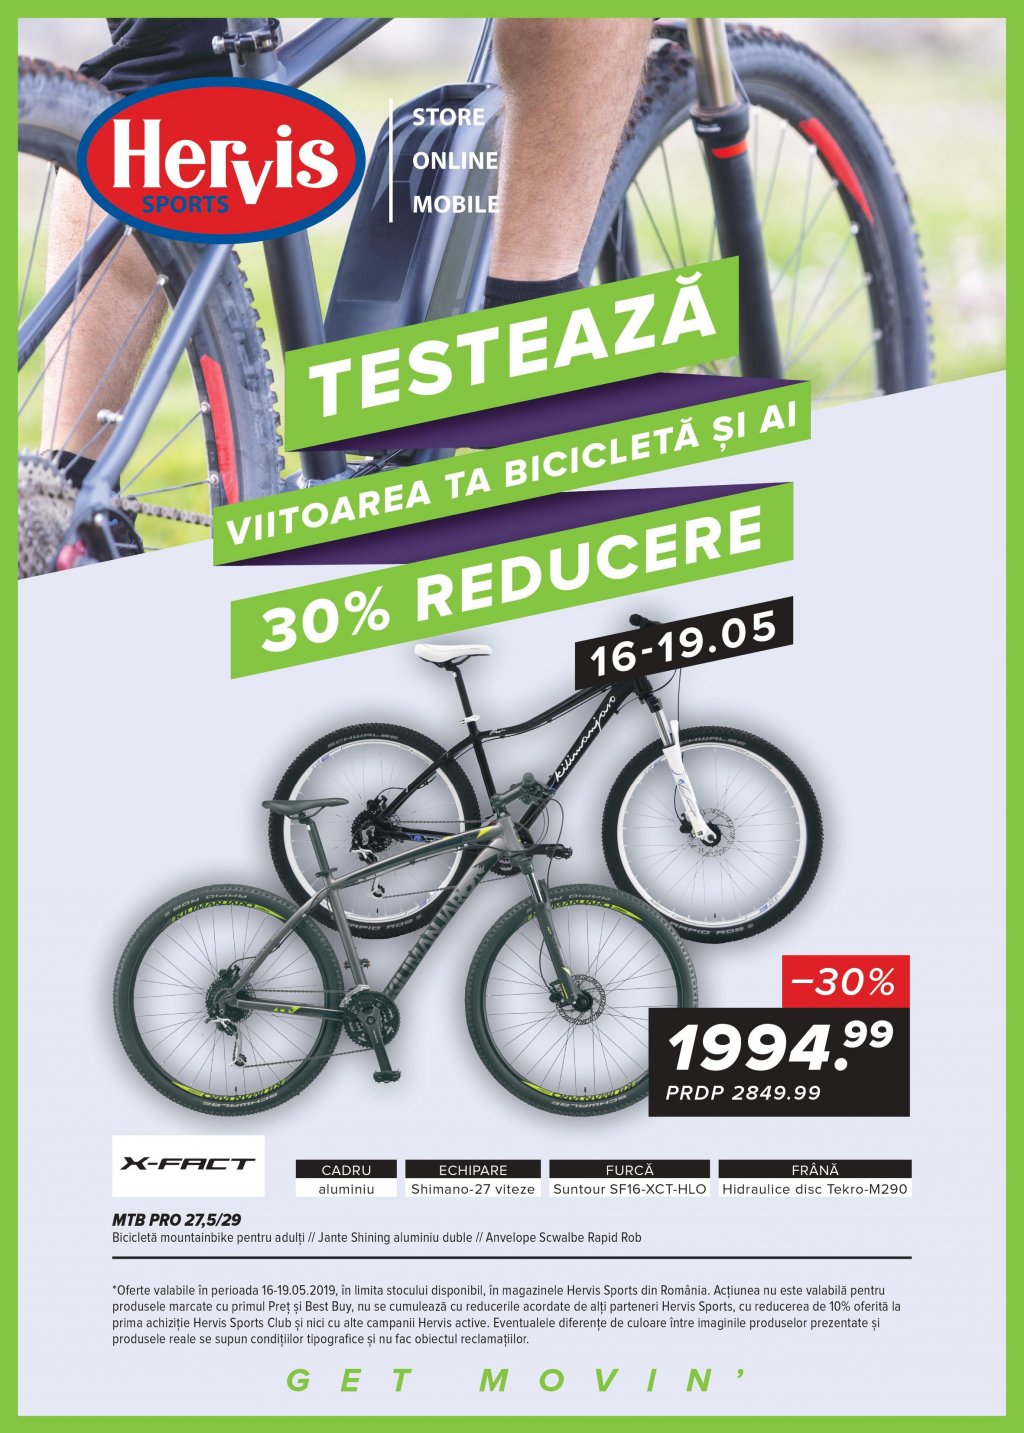 carry out Pronoun Spoil Catalog Hervis Sports 13-19 mai 2019 "Testeaza viitoarea ta bicicleta si ai  30%